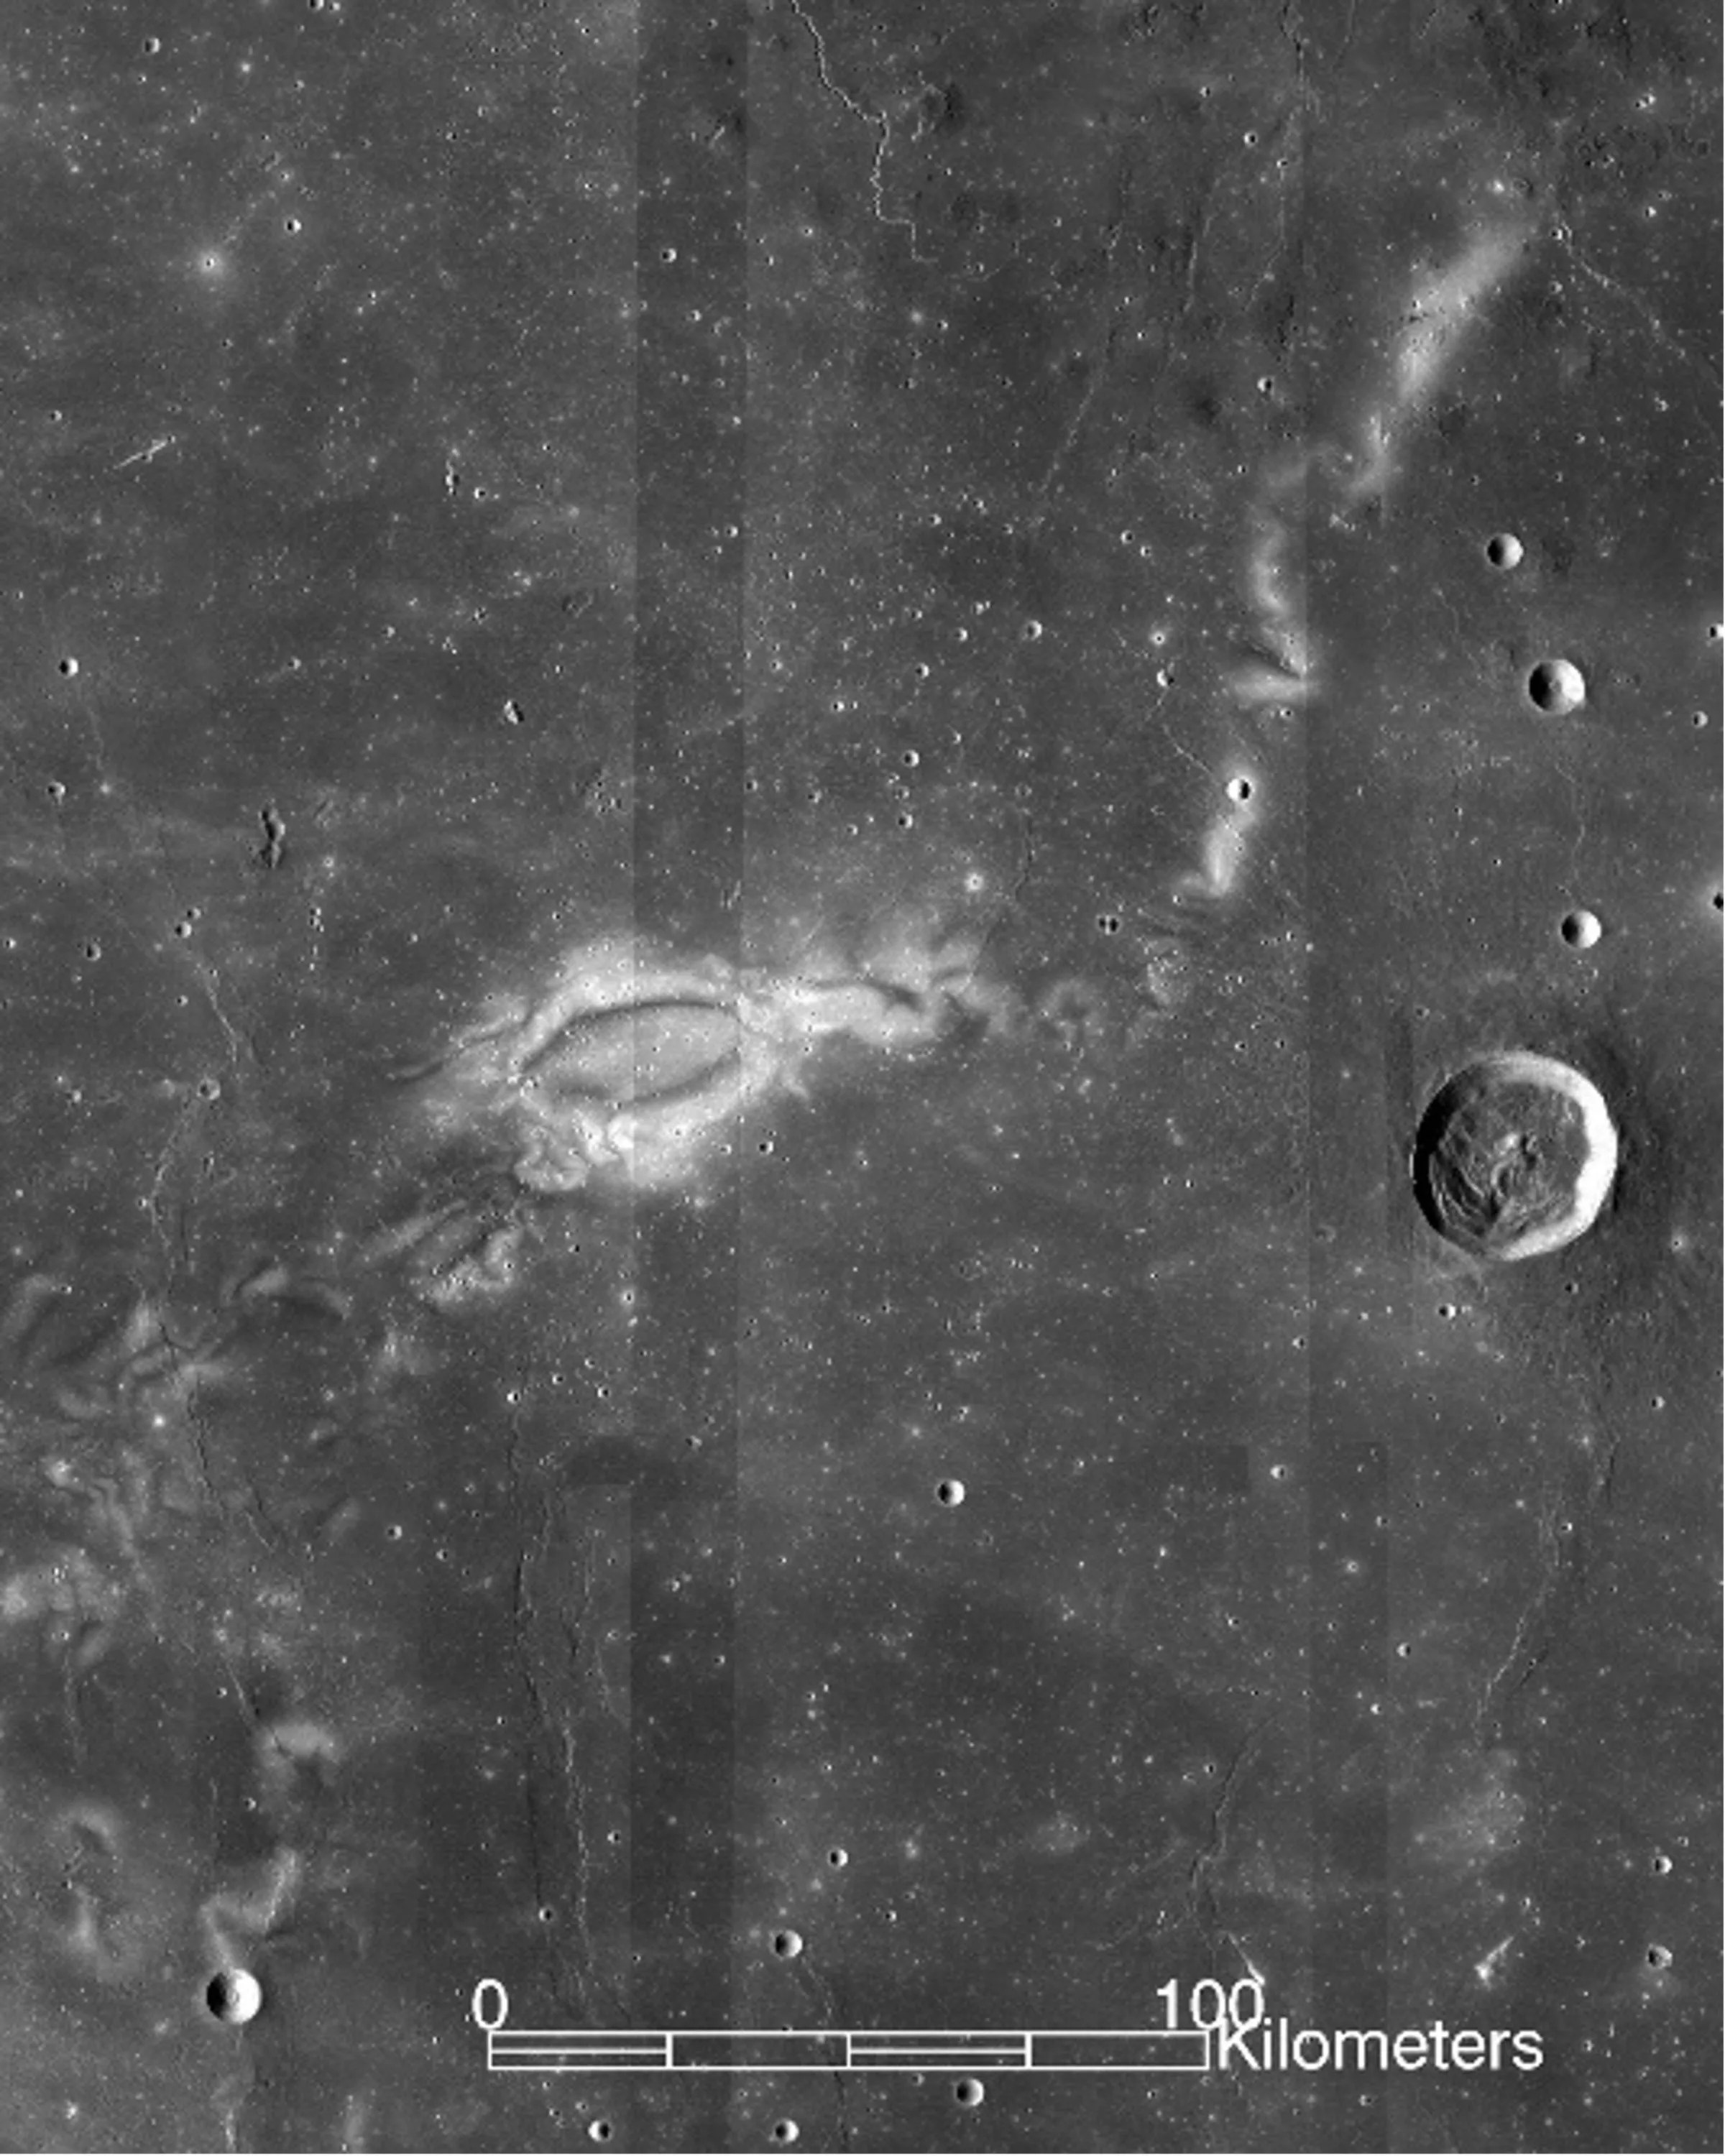 这张图像是月球表面的一个大型地质特征。图像的大部分是深灰色，显示出相对平坦的区域。一些小陨石坑散布在各处，一个大陨石坑位于最右侧。在图像的左中央，Reiner Gamma显示为一个浅色的椭圆形，边缘呈白色，像一朵云。其他分散的白色条纹向上延伸至涡流的右侧。图像底部有一个刻度，表示涡流的主要部分